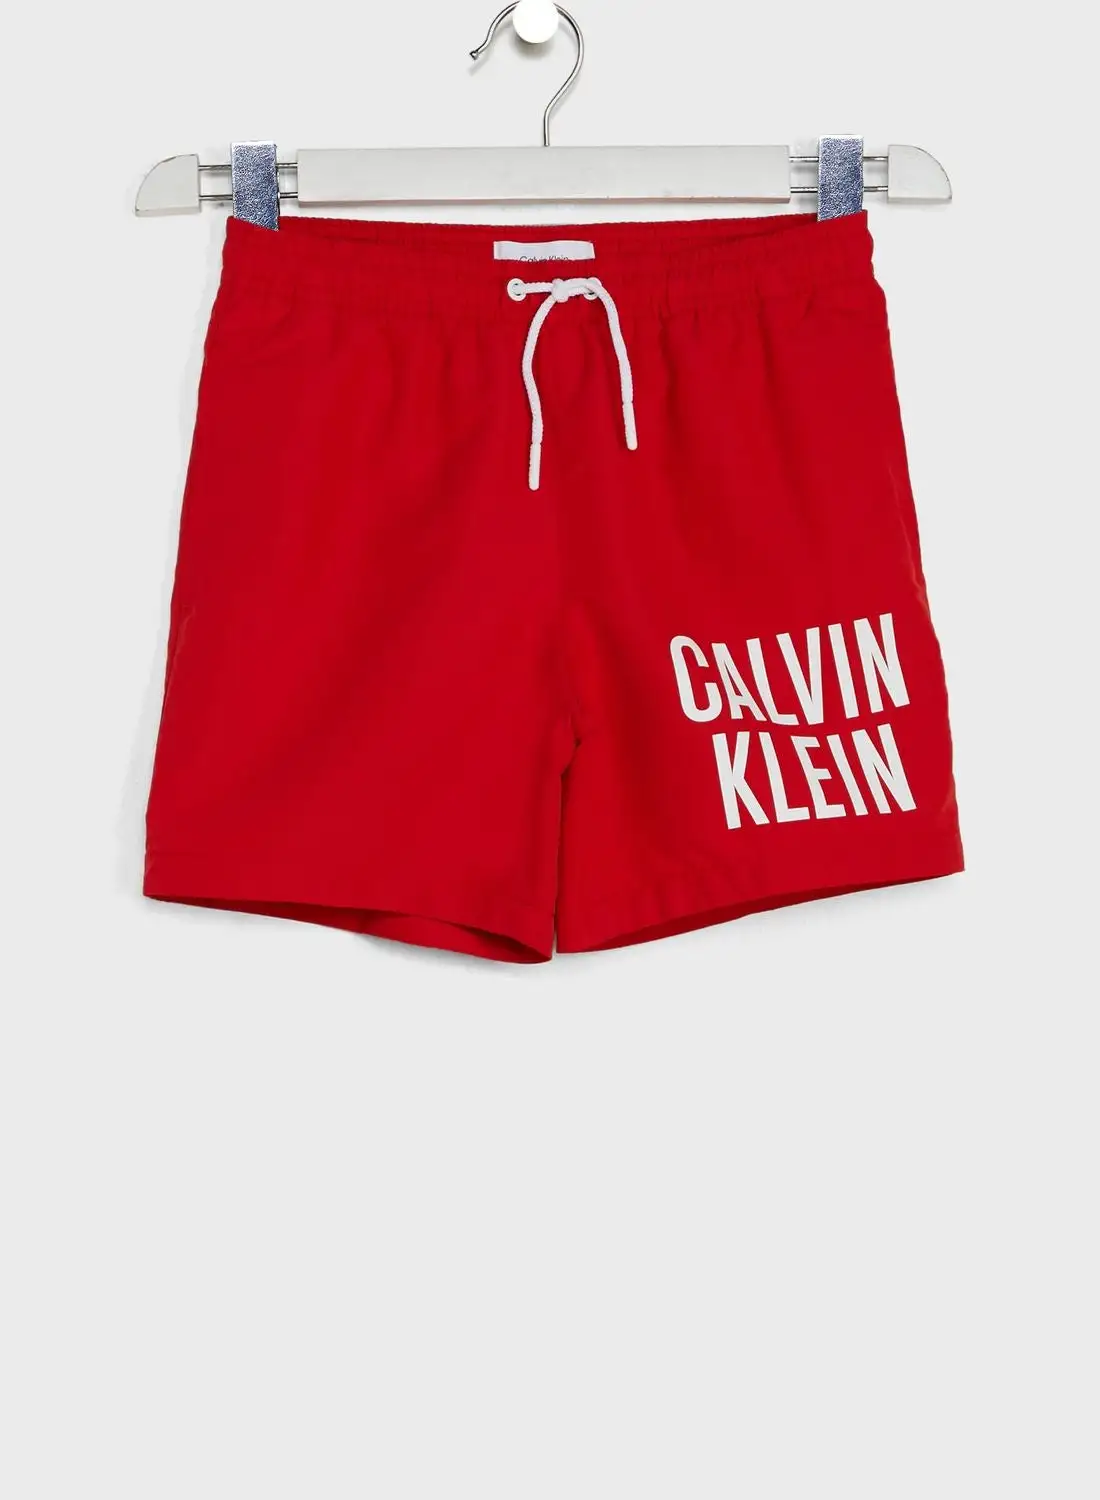 CALVIN KLEIN Youth Logo Drawstring Swim Shorts